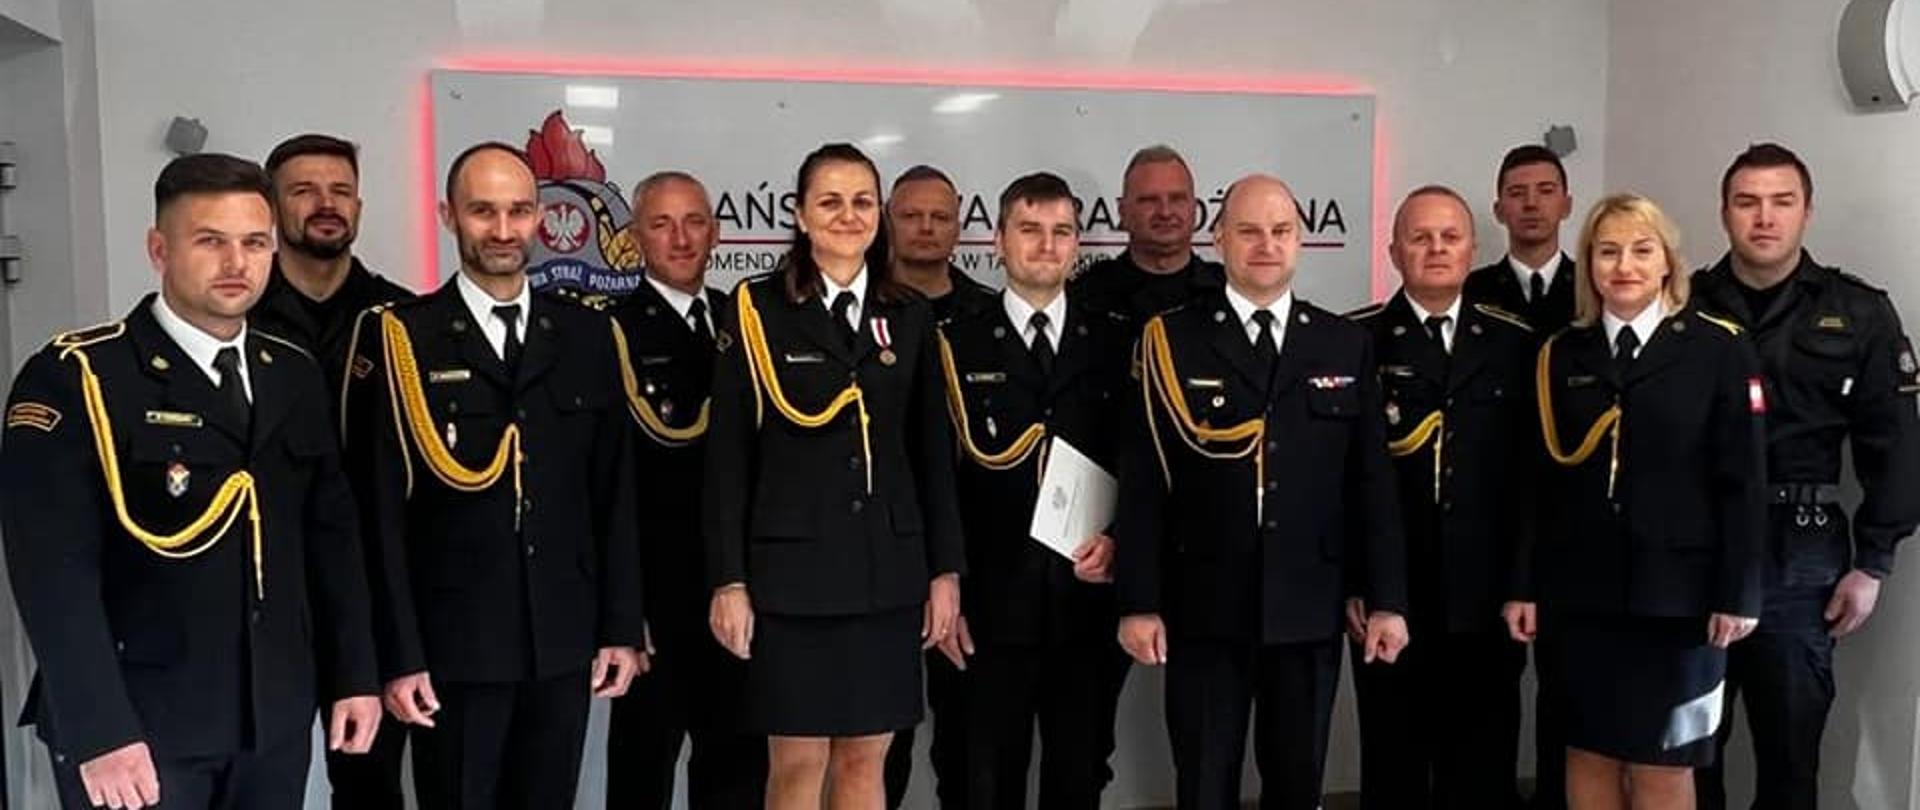 Wspólne zdjęcie grupy strażaków po wręczeniu nominacji.